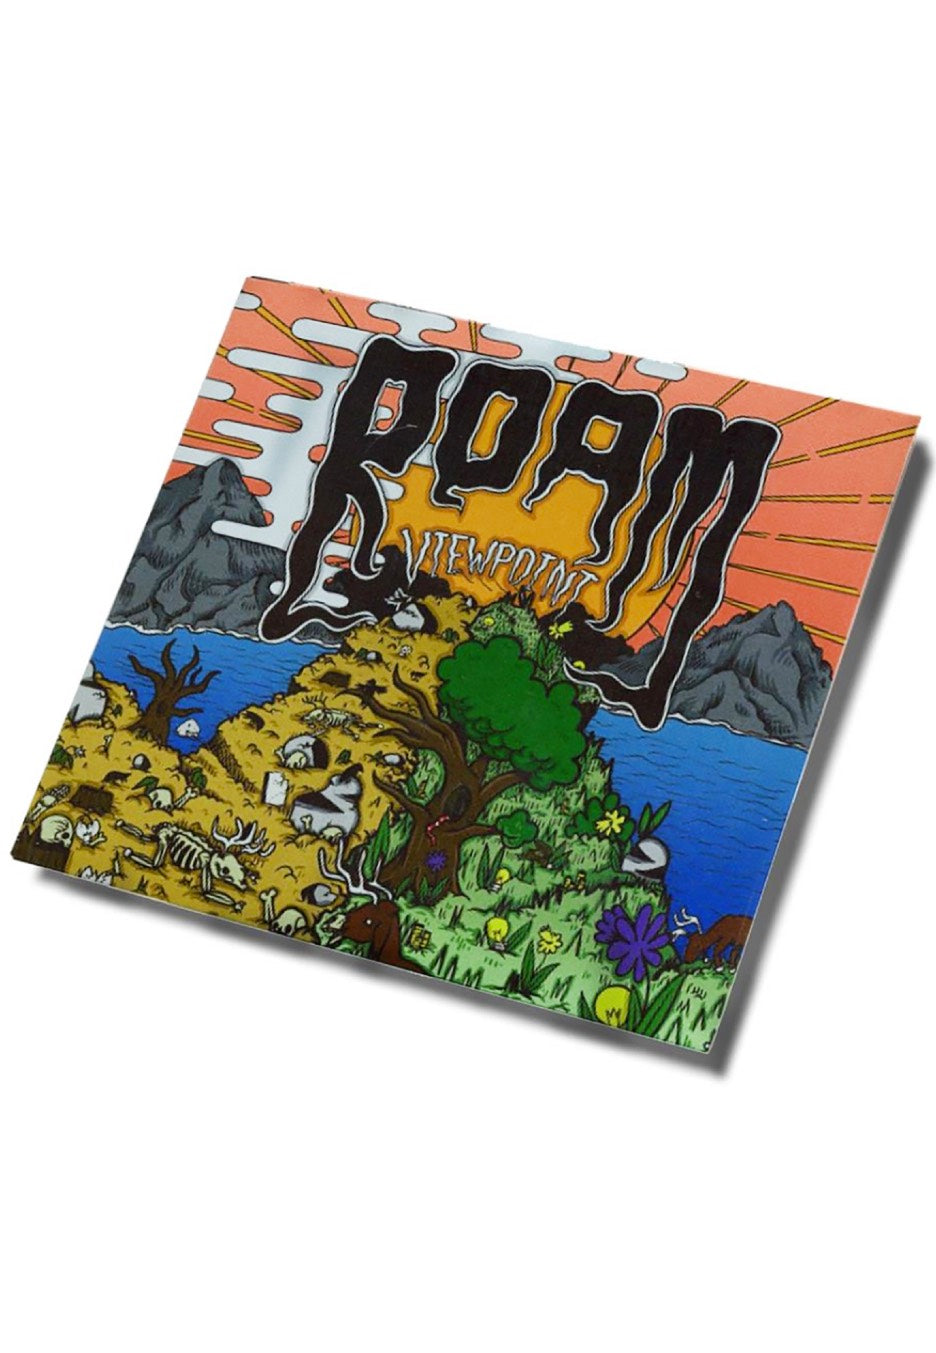 ROAM - Viewpoint - CD